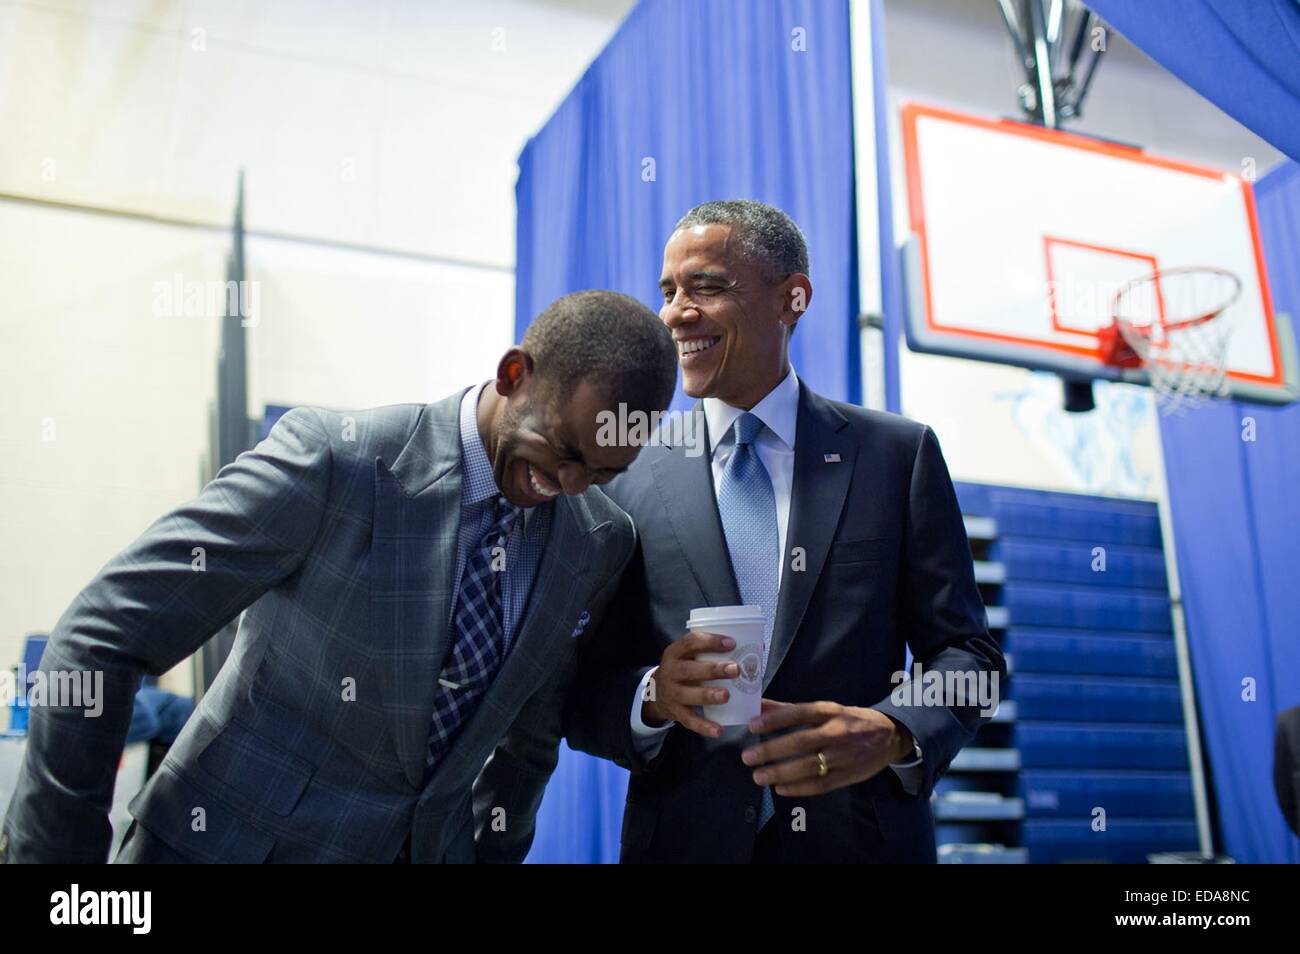 Le président américain Barack Obama partage un rire en coulisses avec les Los Angeles Clippers basketball player Chris Paul, qui était sur le point de présenter le président d'une initiative le gardien de mon frère de ville le 21 juillet 2014 à Washington, DC. Banque D'Images